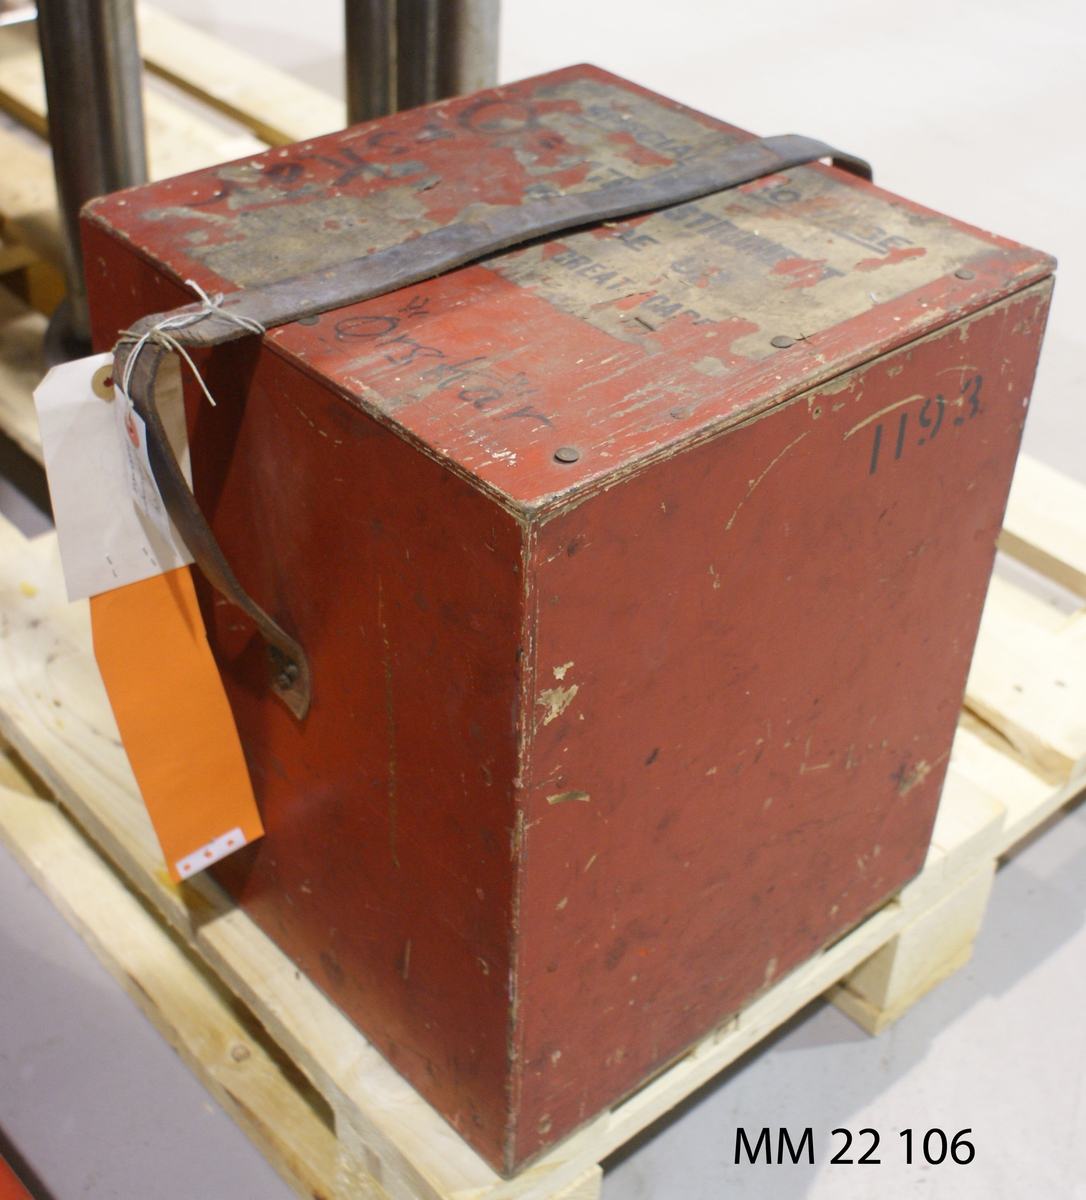 Gyrokompass, reservdel. Brown gyrokompass A Type No 1193.
Förvaras i röd trälåda märkt "Örskär 1193".
I lådan lapp med text: "D/V Set AT 2 3/4 Turns. Kompassen provkörd den 13-9-66 u.a. Roland Sjödal". Dimensioner avser låda.
X 536.